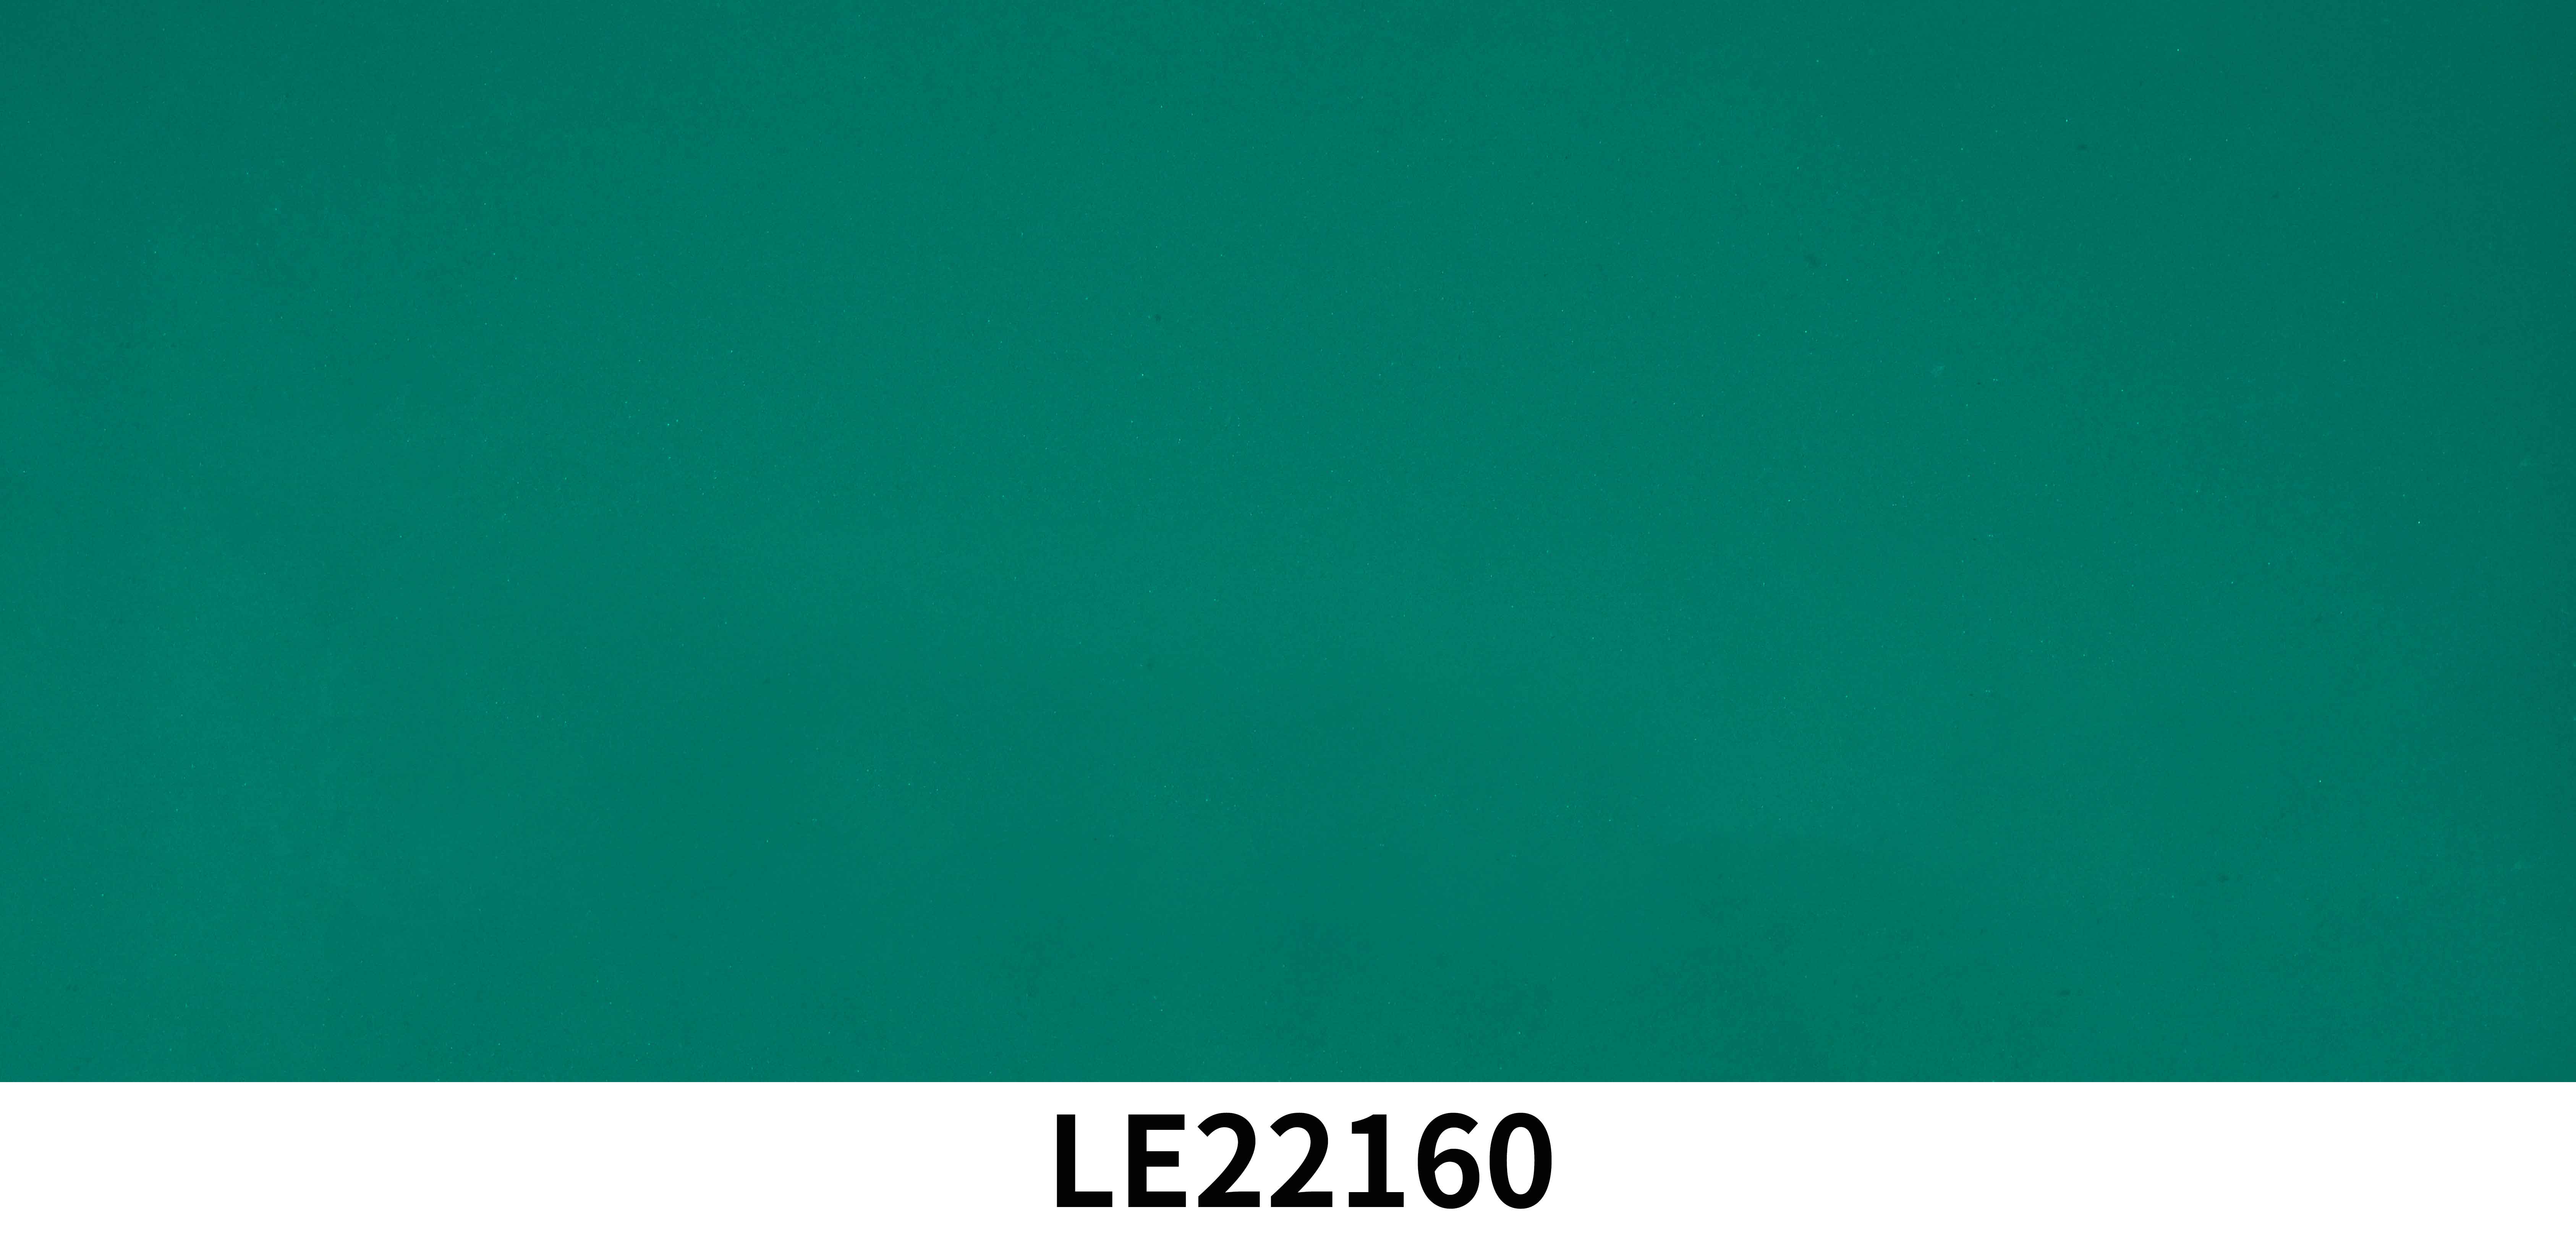 LE22160